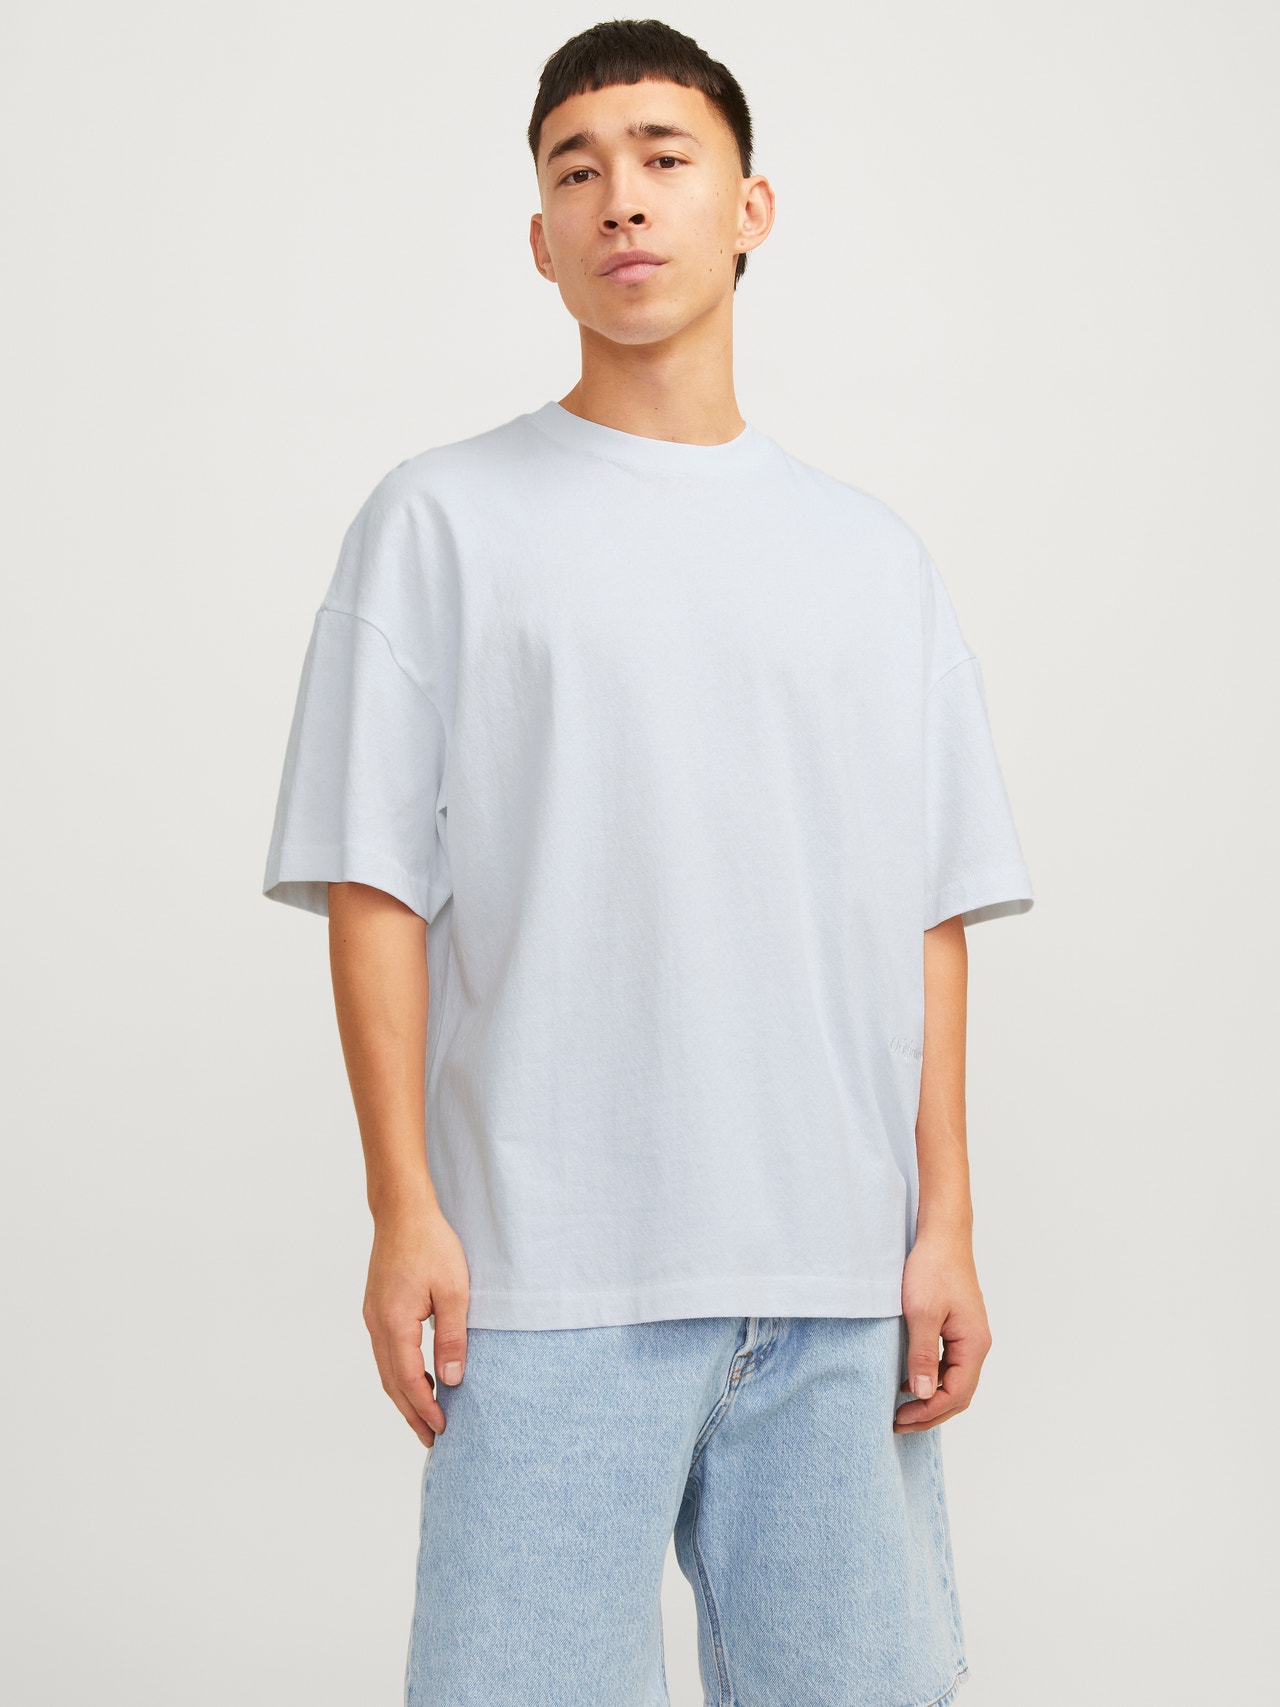 Jack & Jones T-shirt Estampar Decote Redondo -Bright White - 12256330